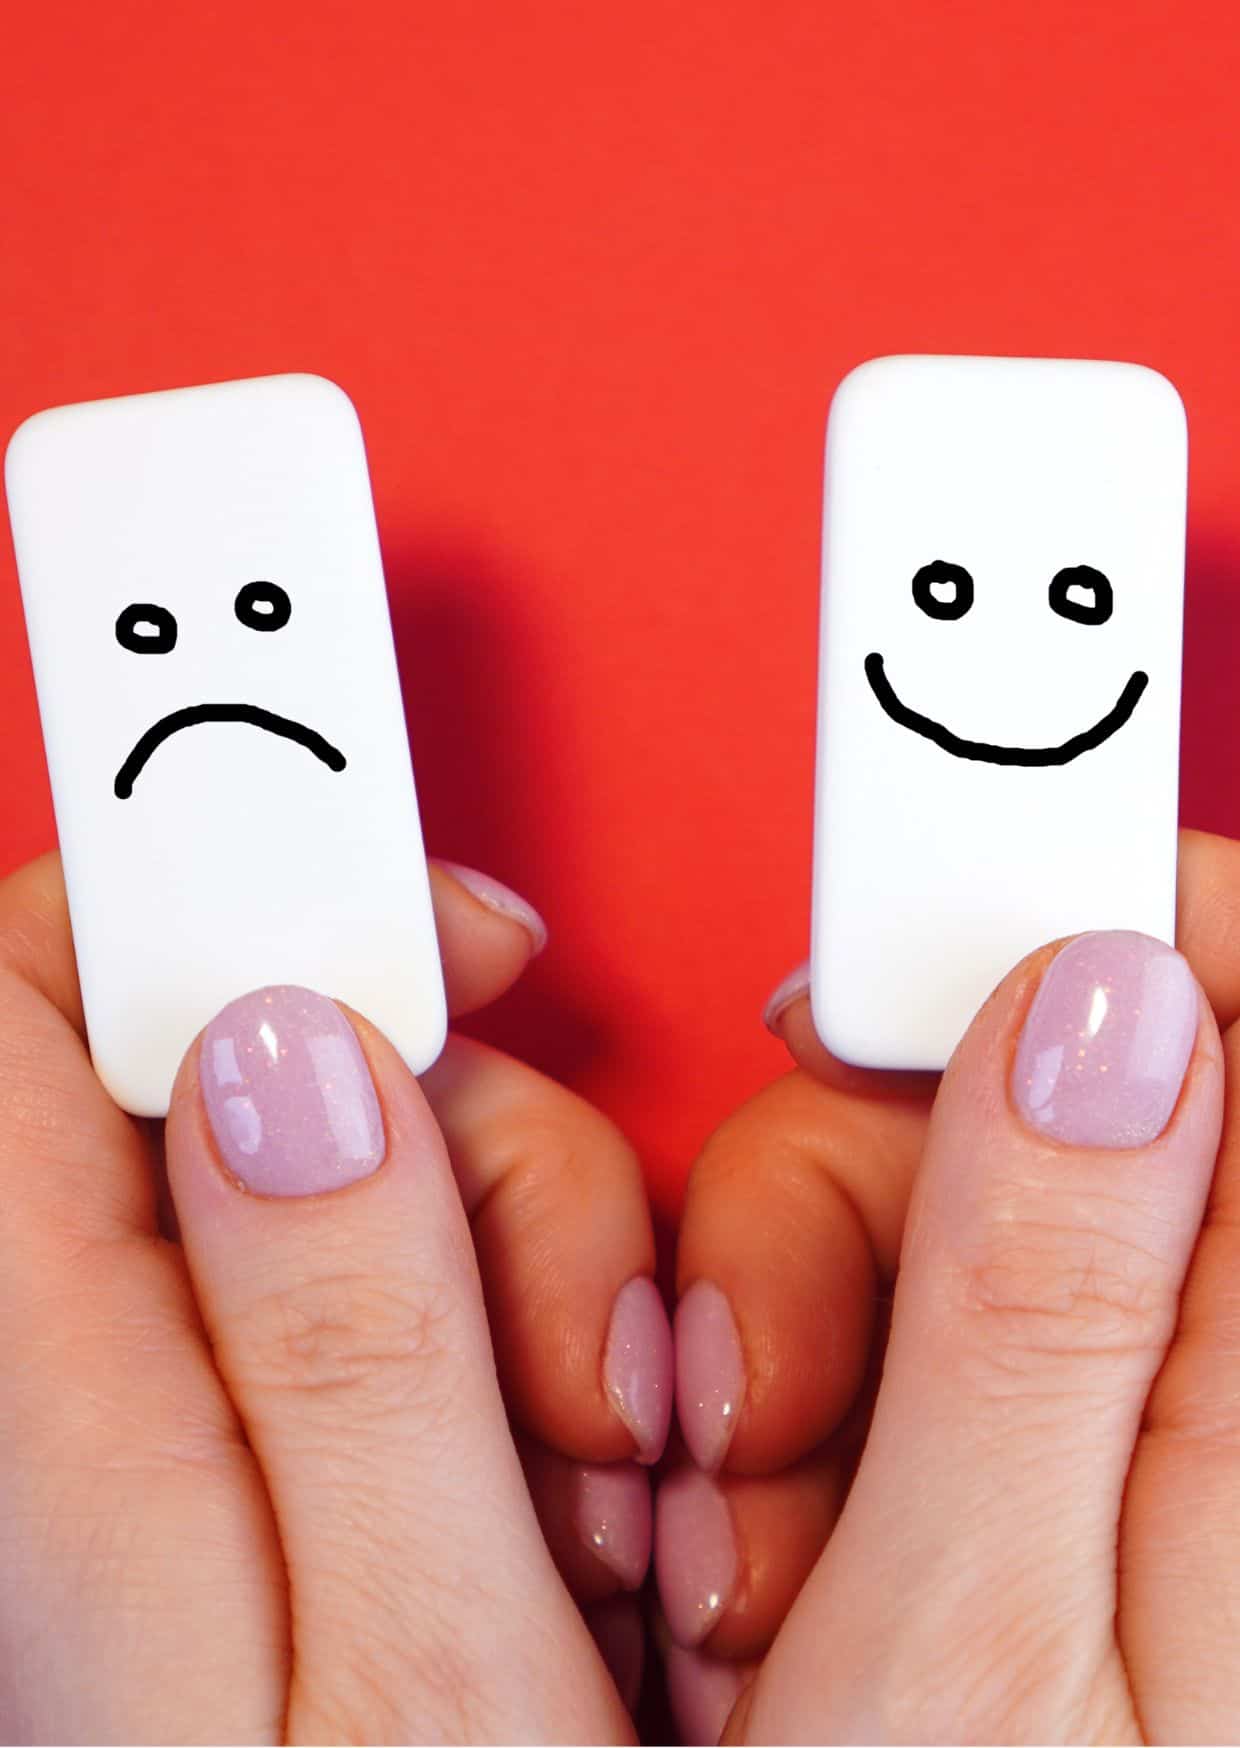 Zwei Hände mit pinkem Nagellack halten zwei weiße Kacheln nebeneinander. Auf einer Kachel ist ein handgezeichnetes trauriges Gesicht, auf der anderen ein fröhliches Gesicht.